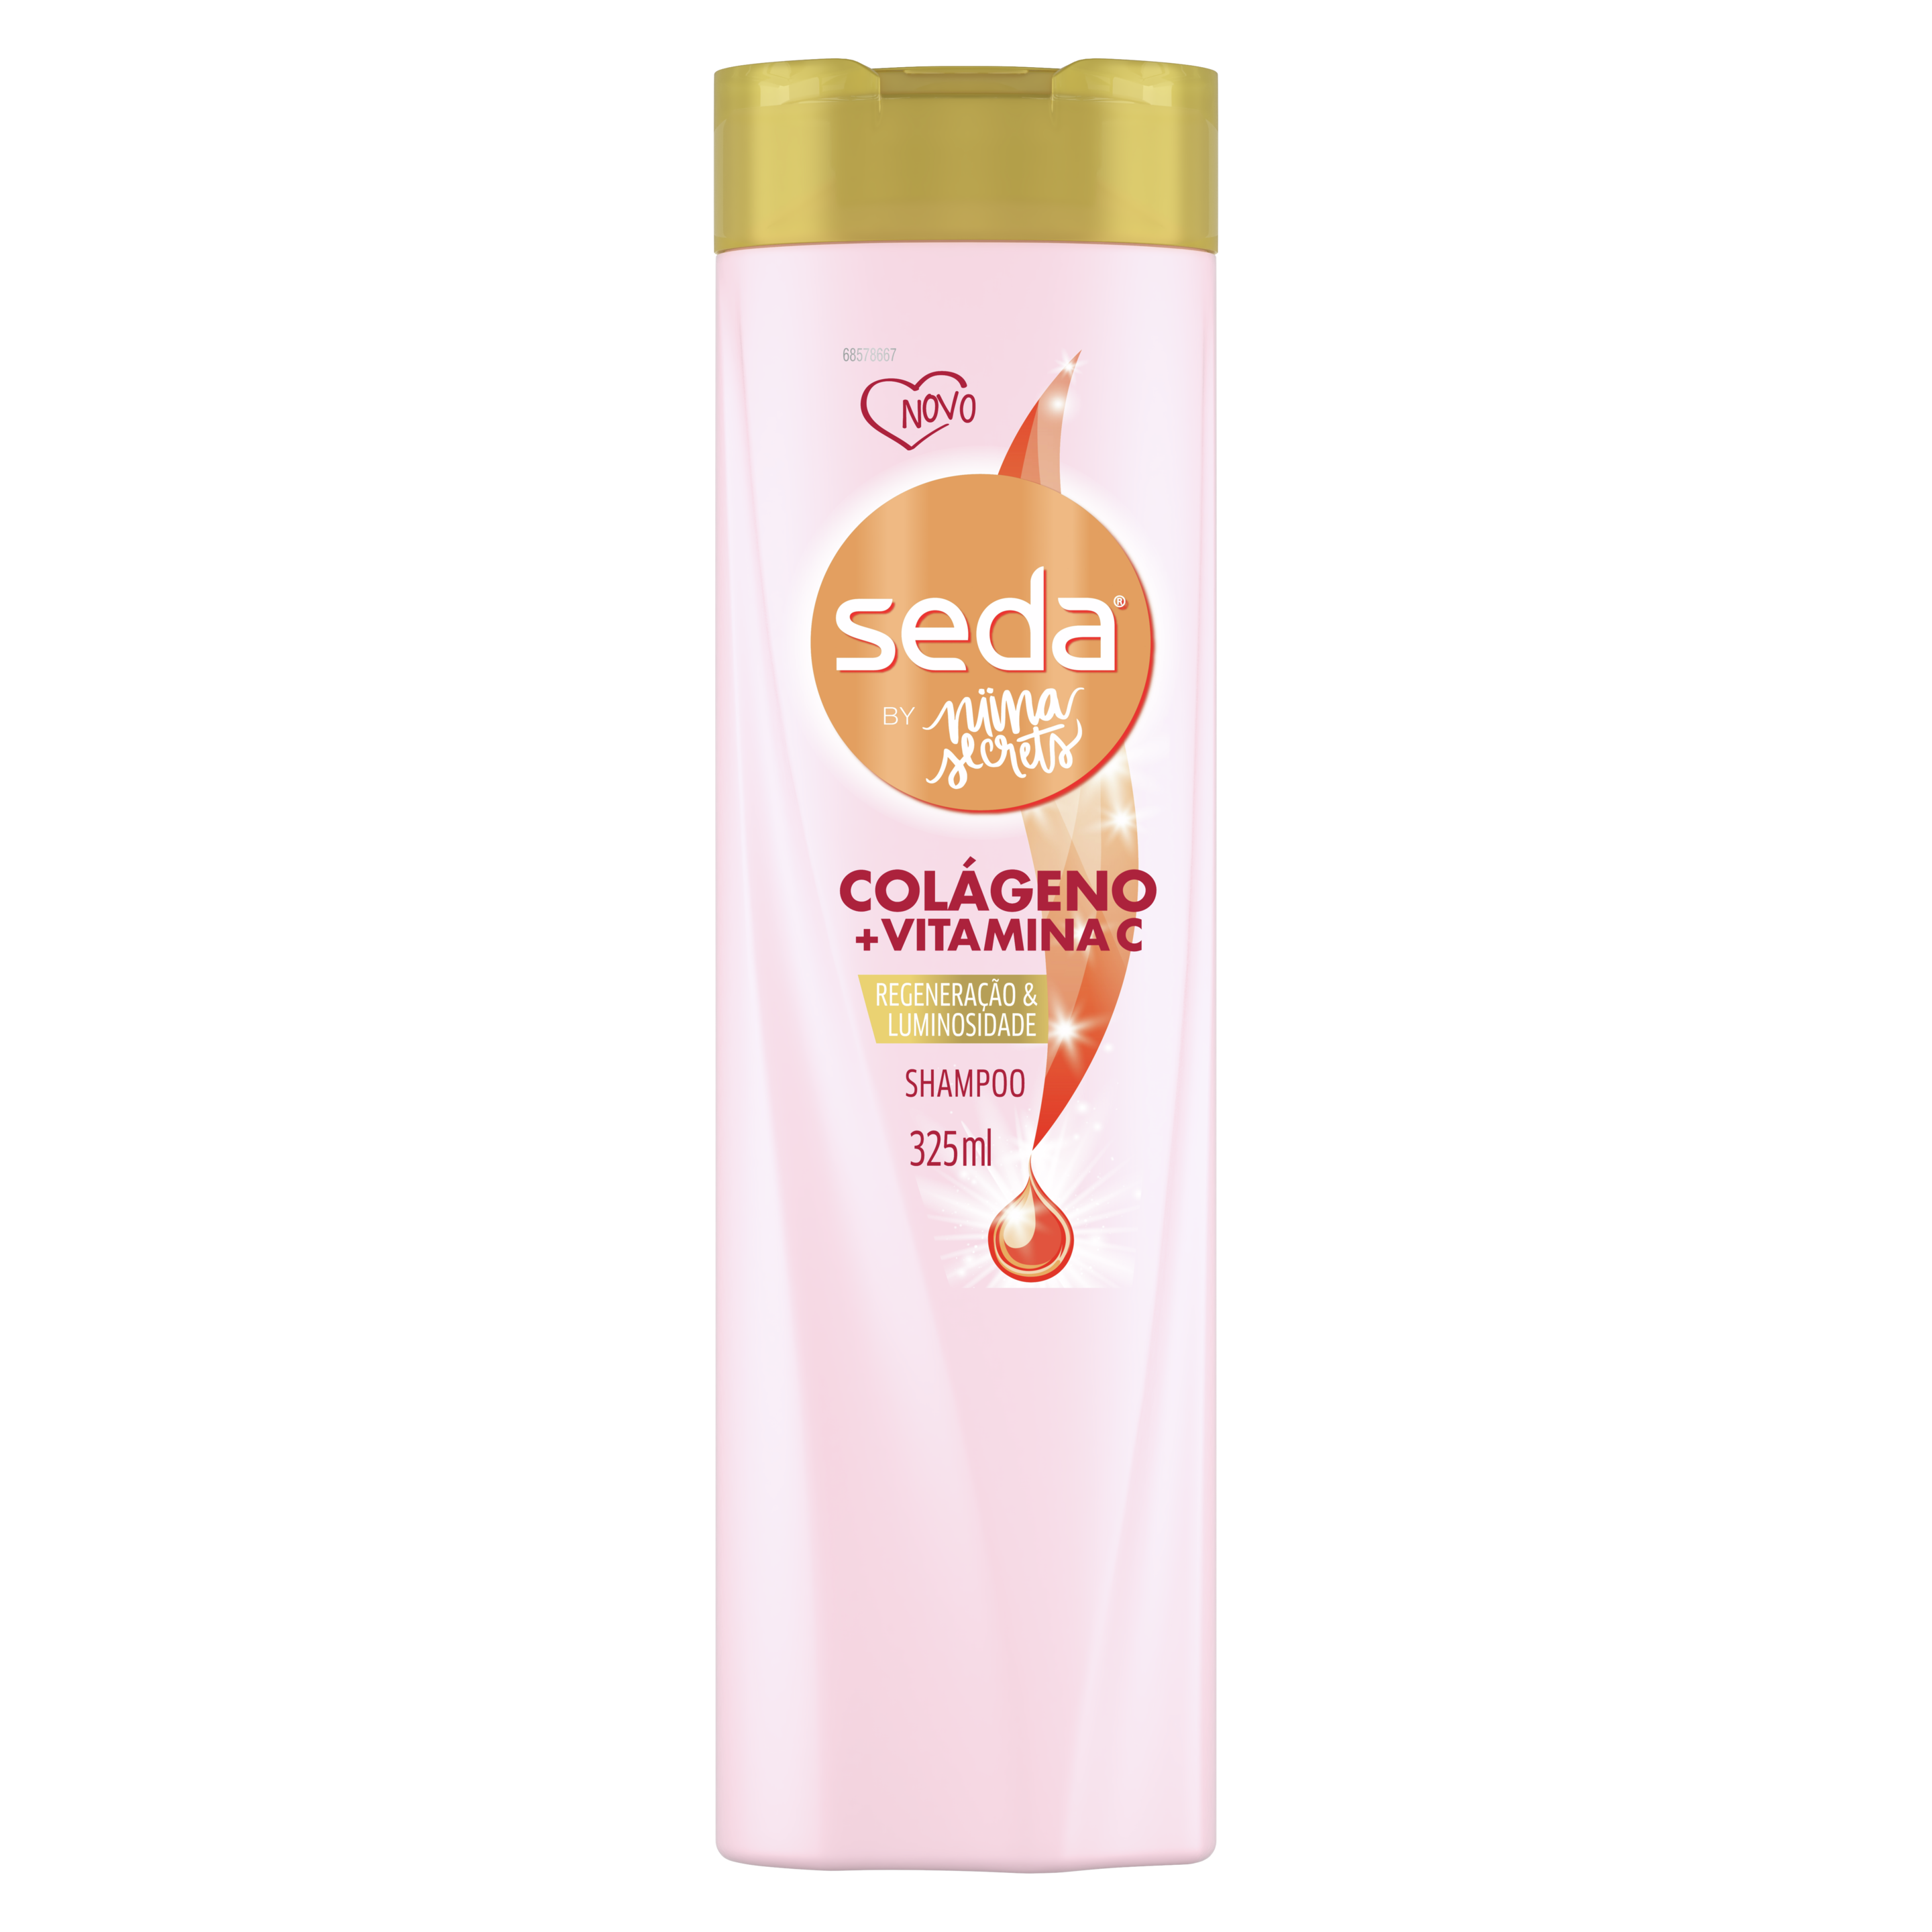 Uma imagem frontal da embalagem de Shampoo Seda By Niina Secrets Colágeno e Vitamina C 325ml